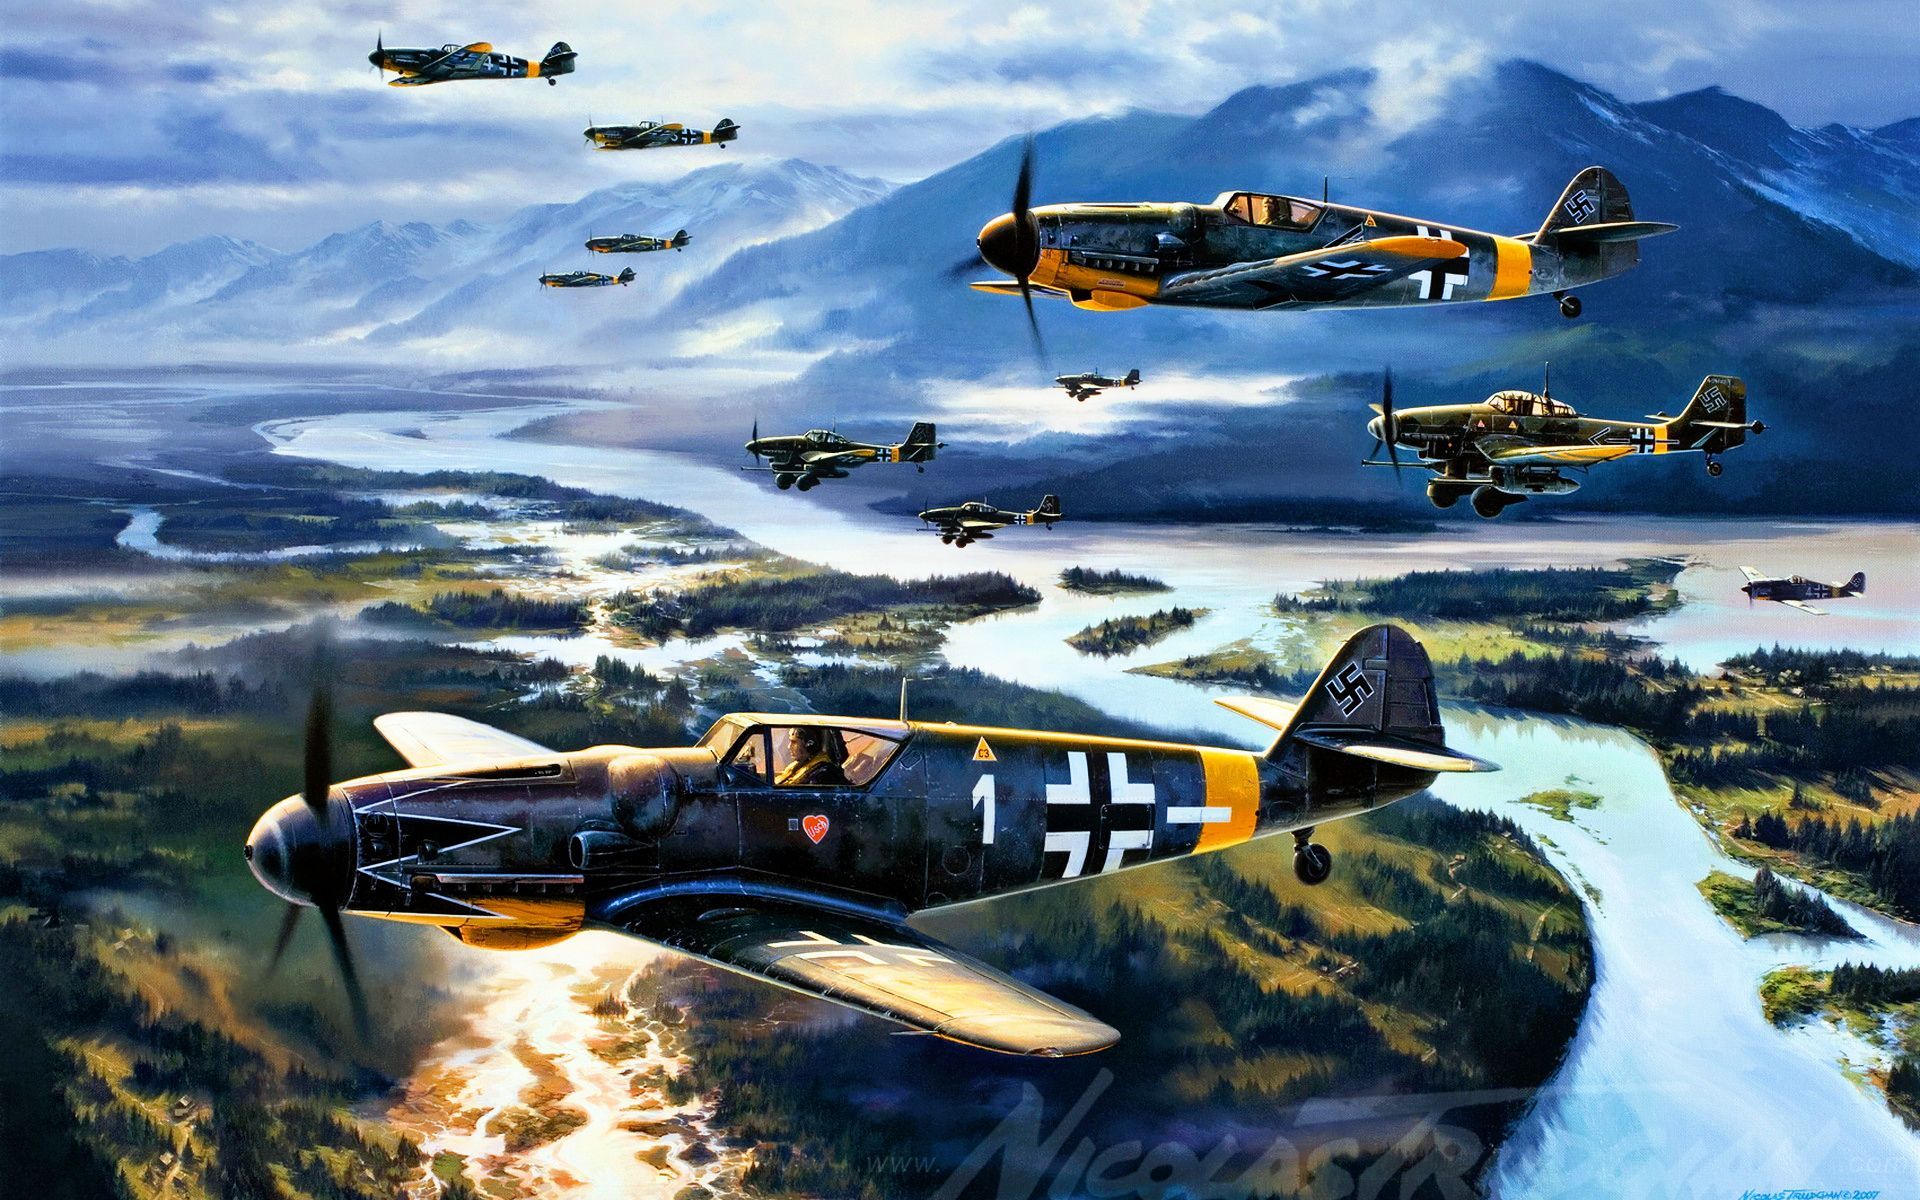 Messerschmitt Bf 109 wallpaper. Aircraft art, Aviation art, Airplane art